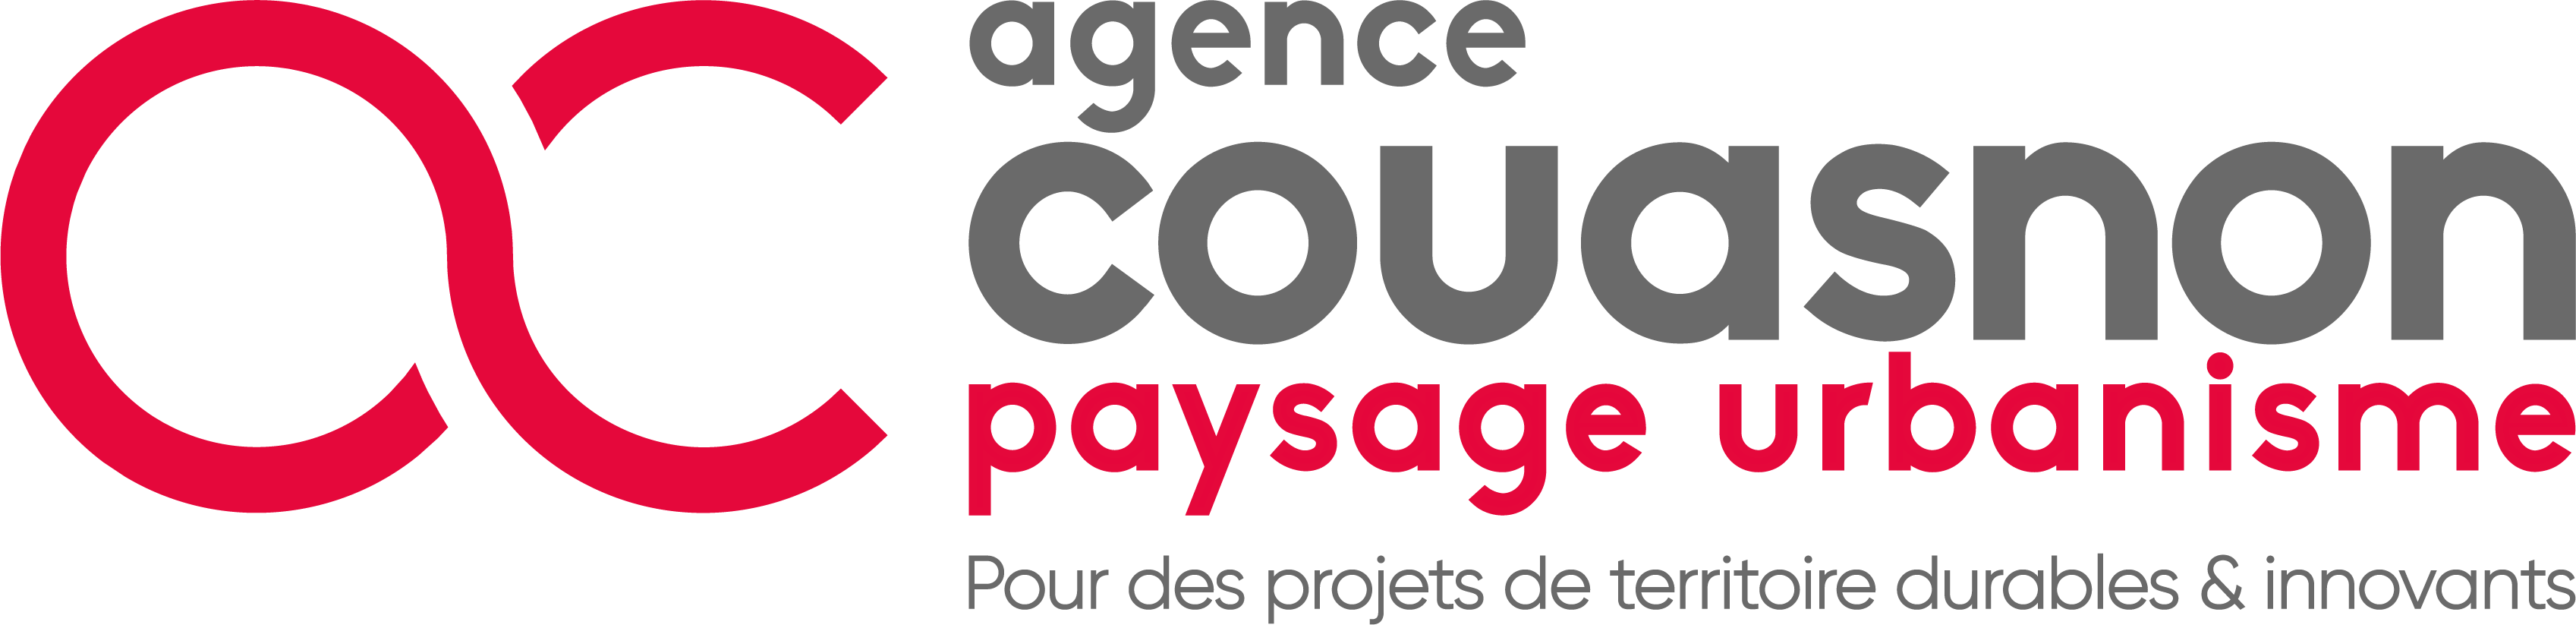 Agence Couasnon